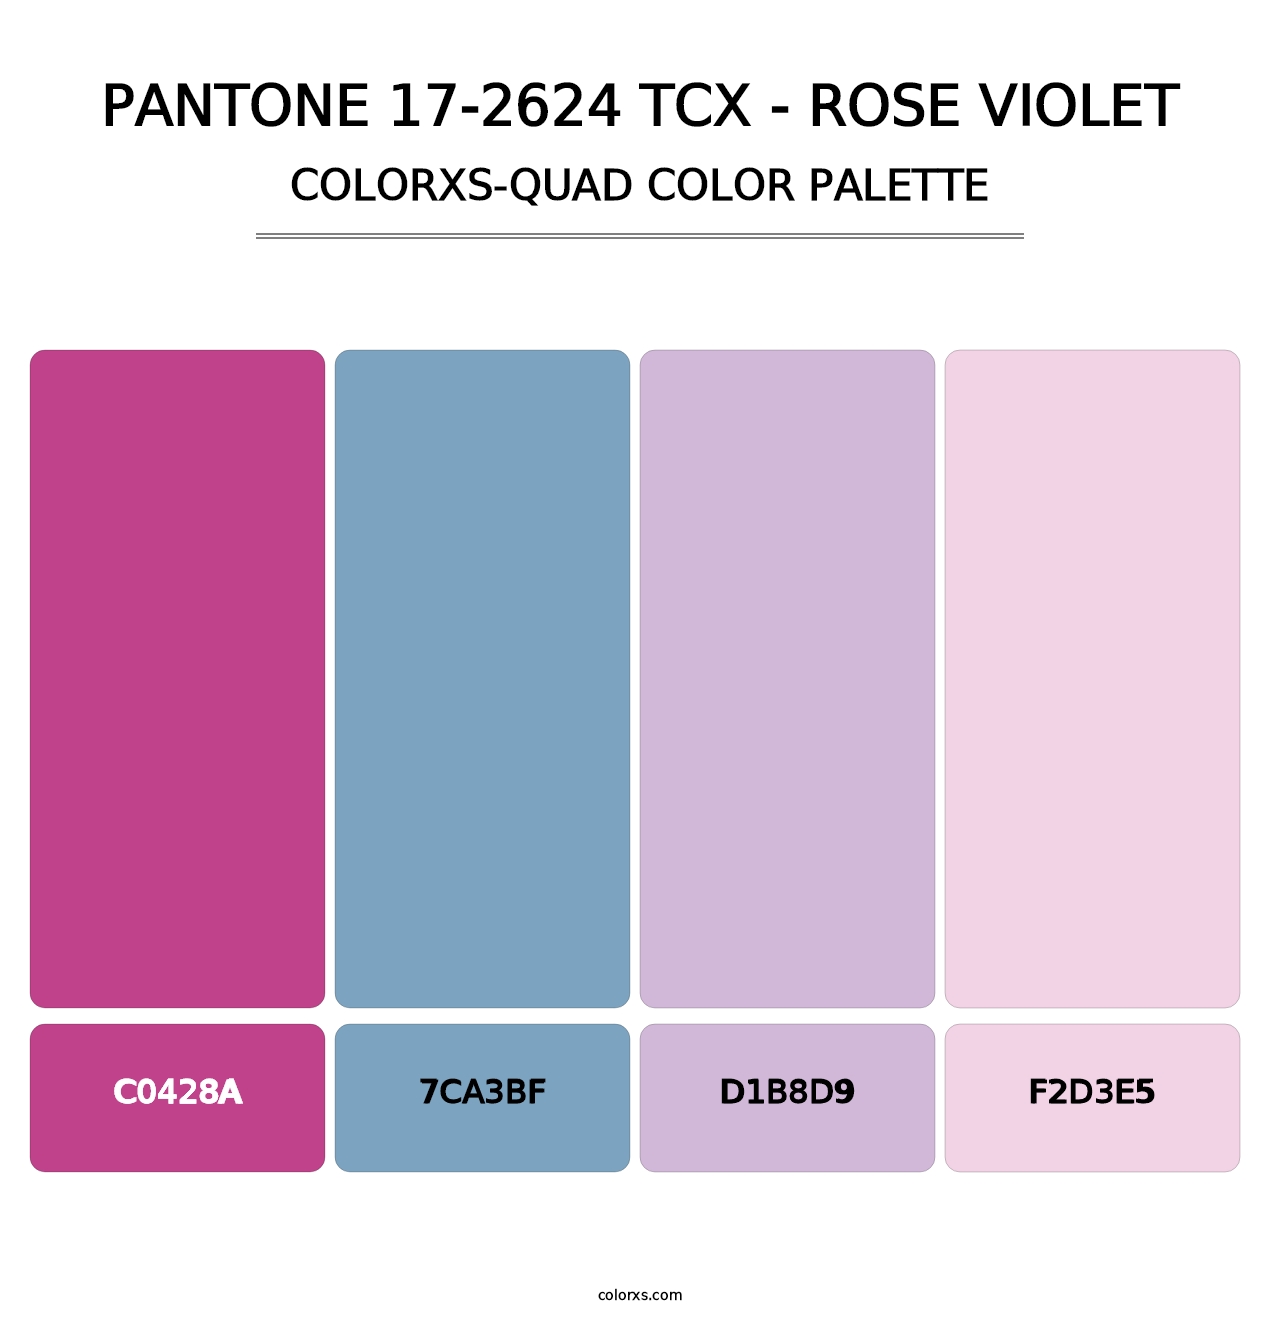 PANTONE 17-2624 TCX - Rose Violet - Colorxs Quad Palette